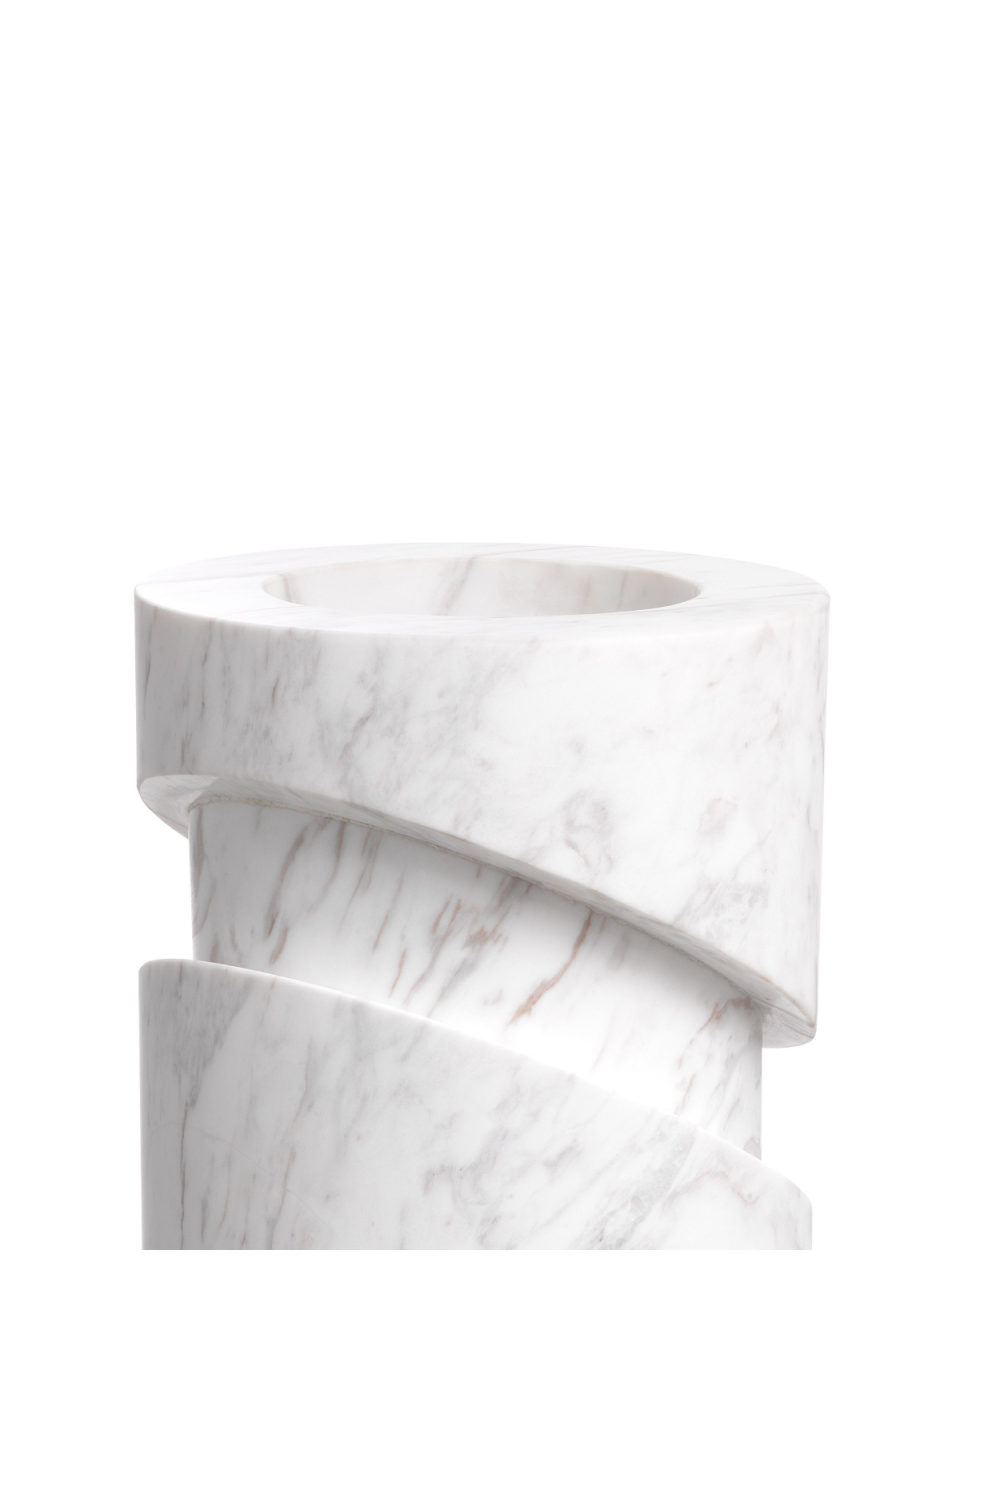 White Marble Object | Eichholtz Angelica | OROA